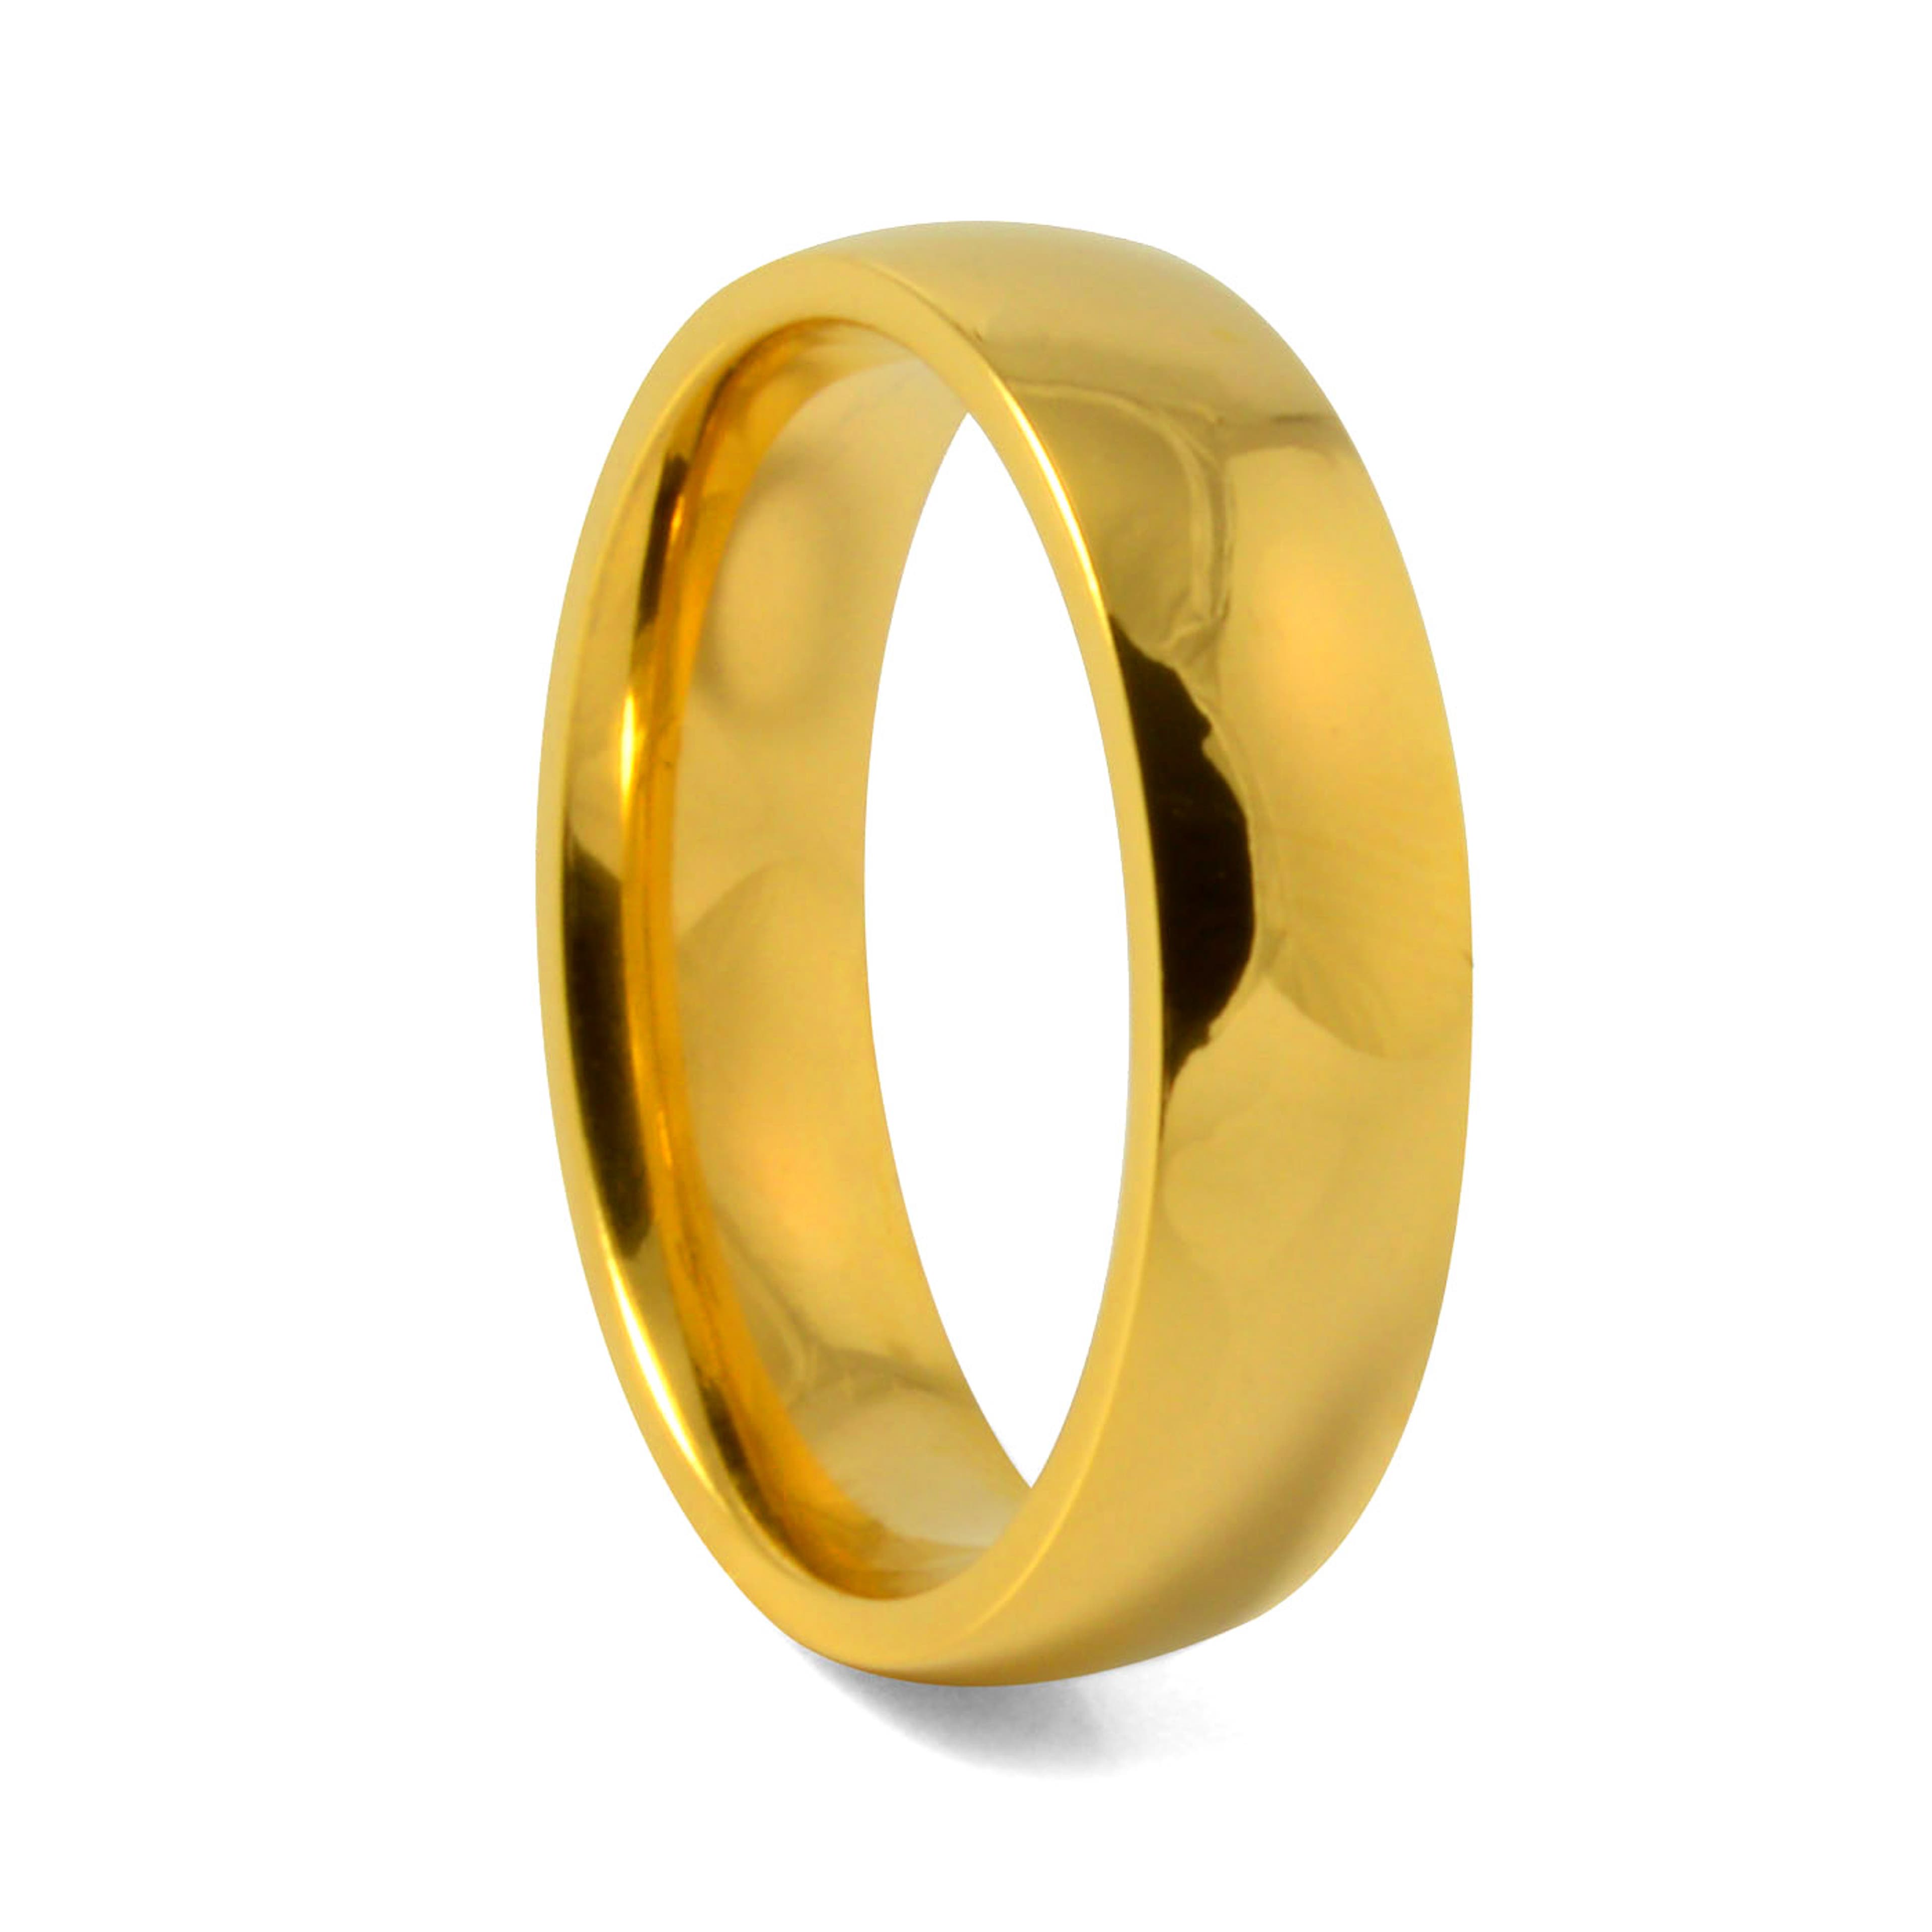 Златист пръстен от титан 6 мм